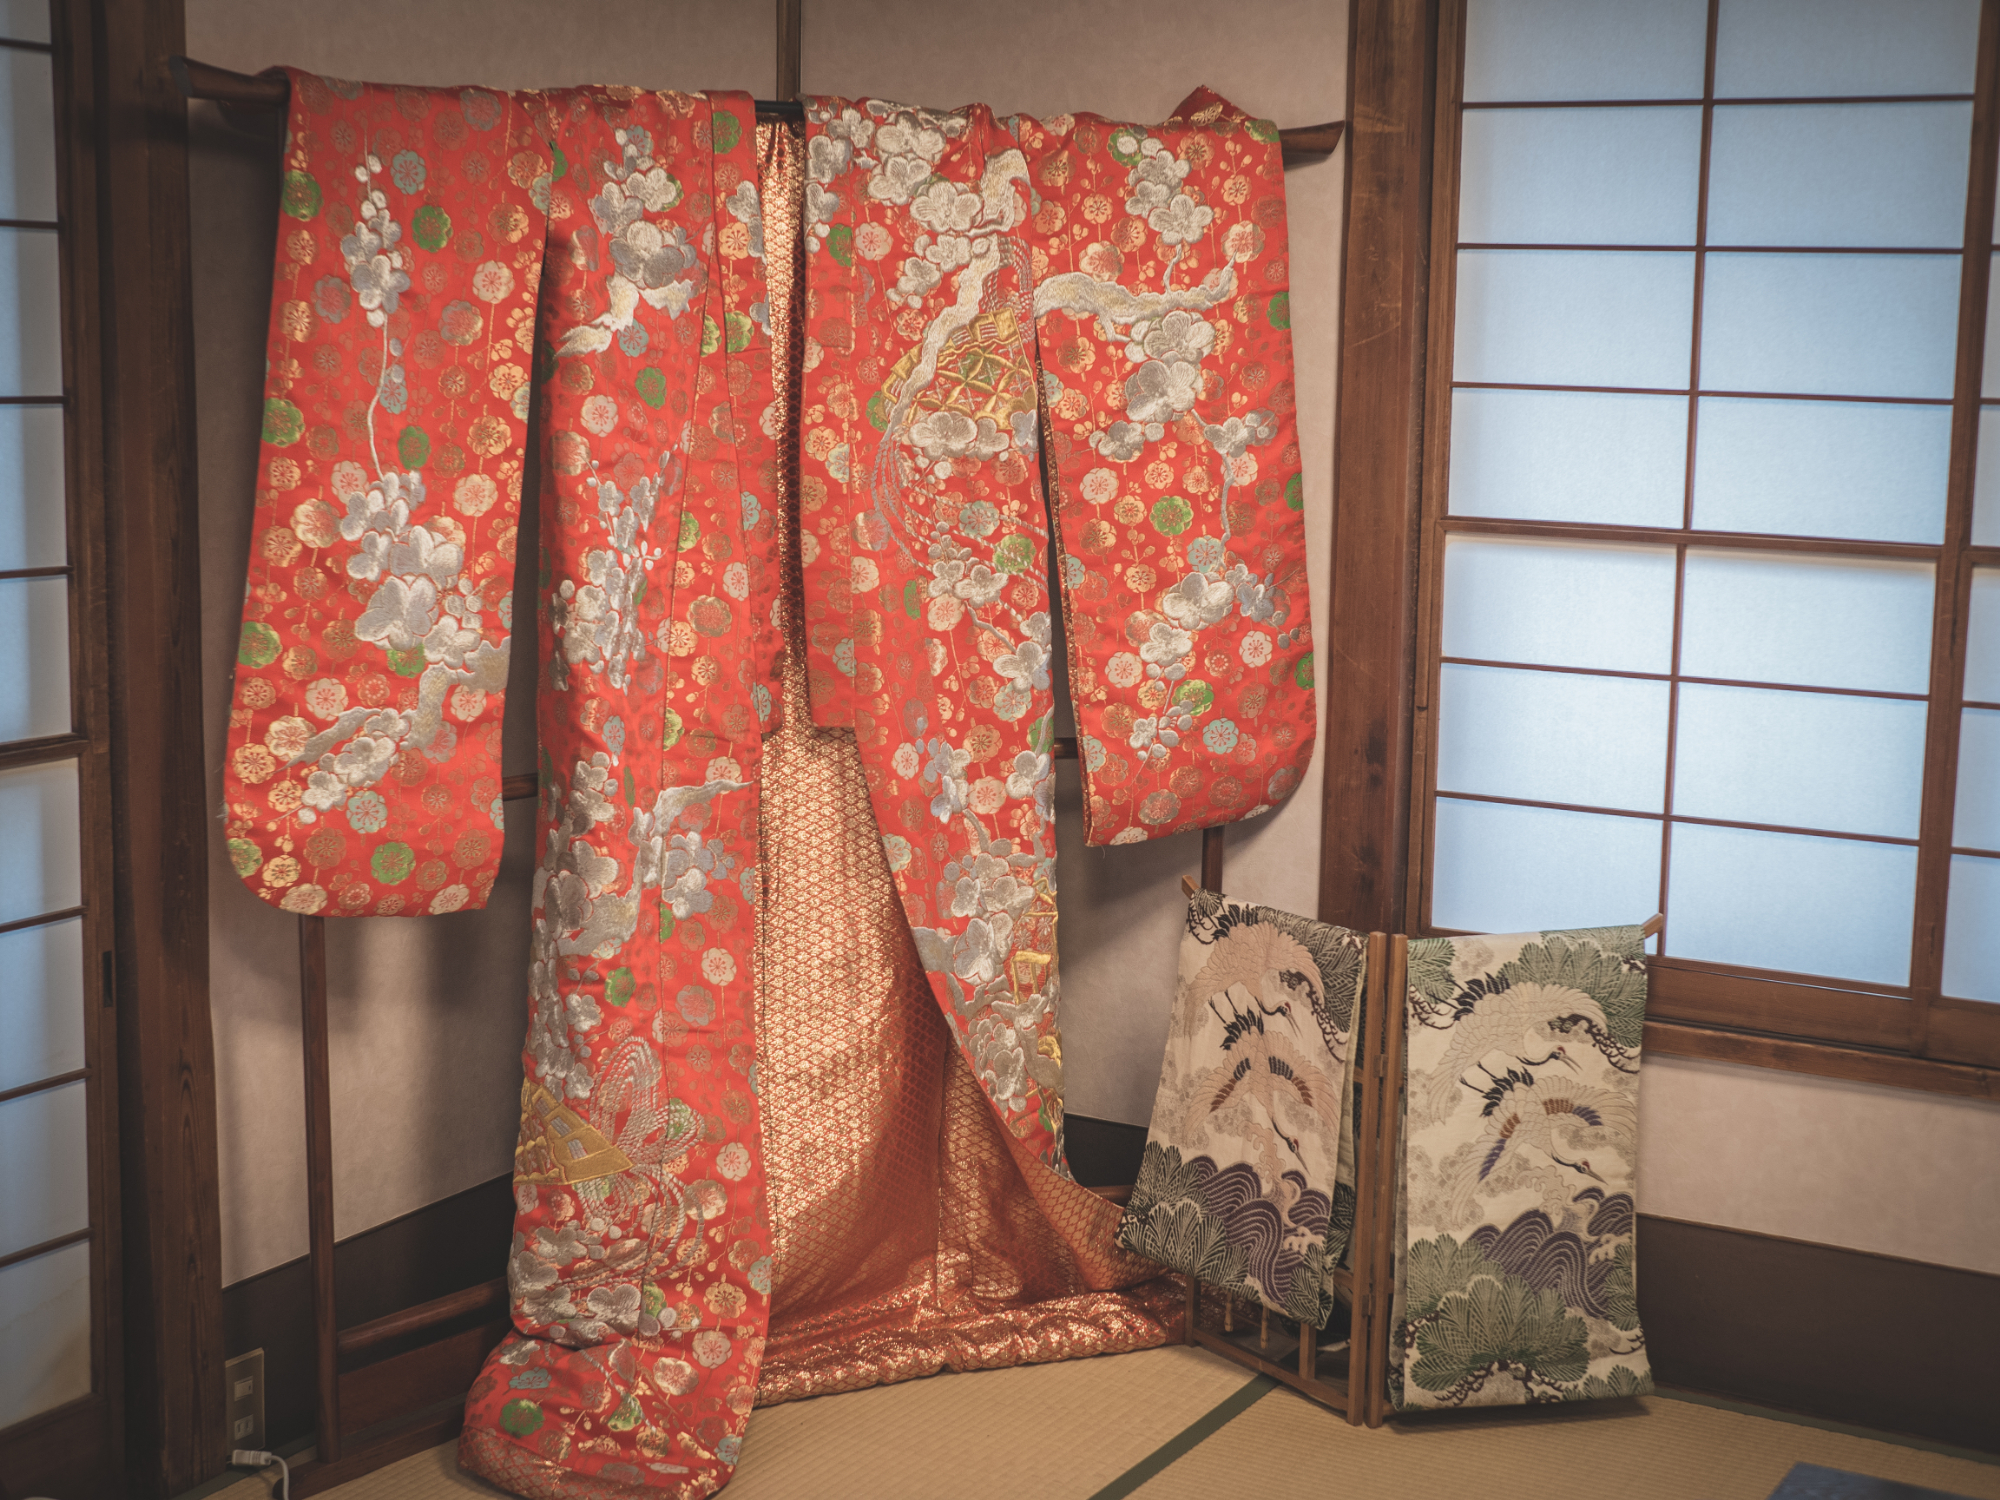 Uchikake and obi on display